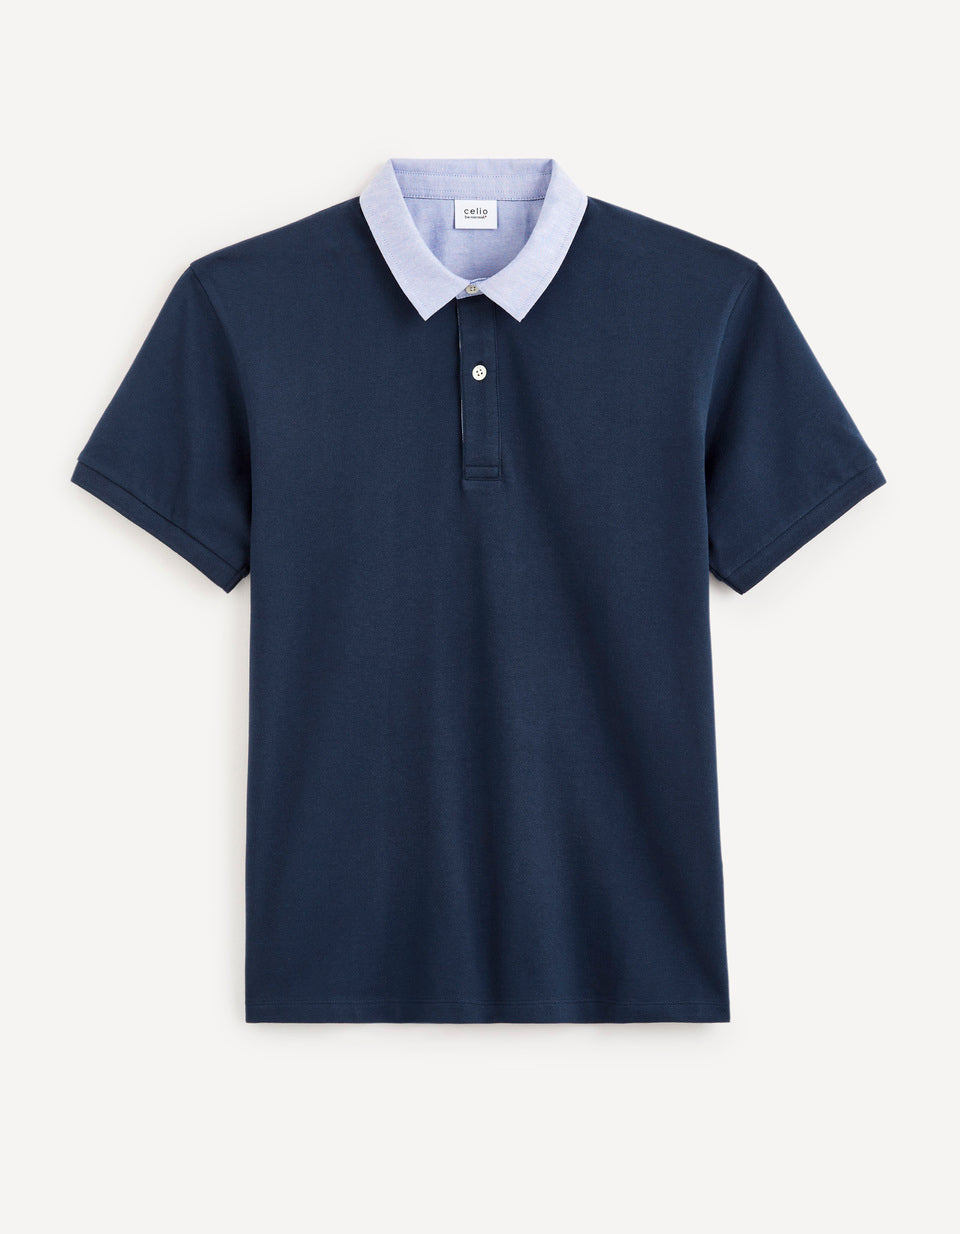 Pique Polo Shirt Collar 100% Cotton - Navy - 03